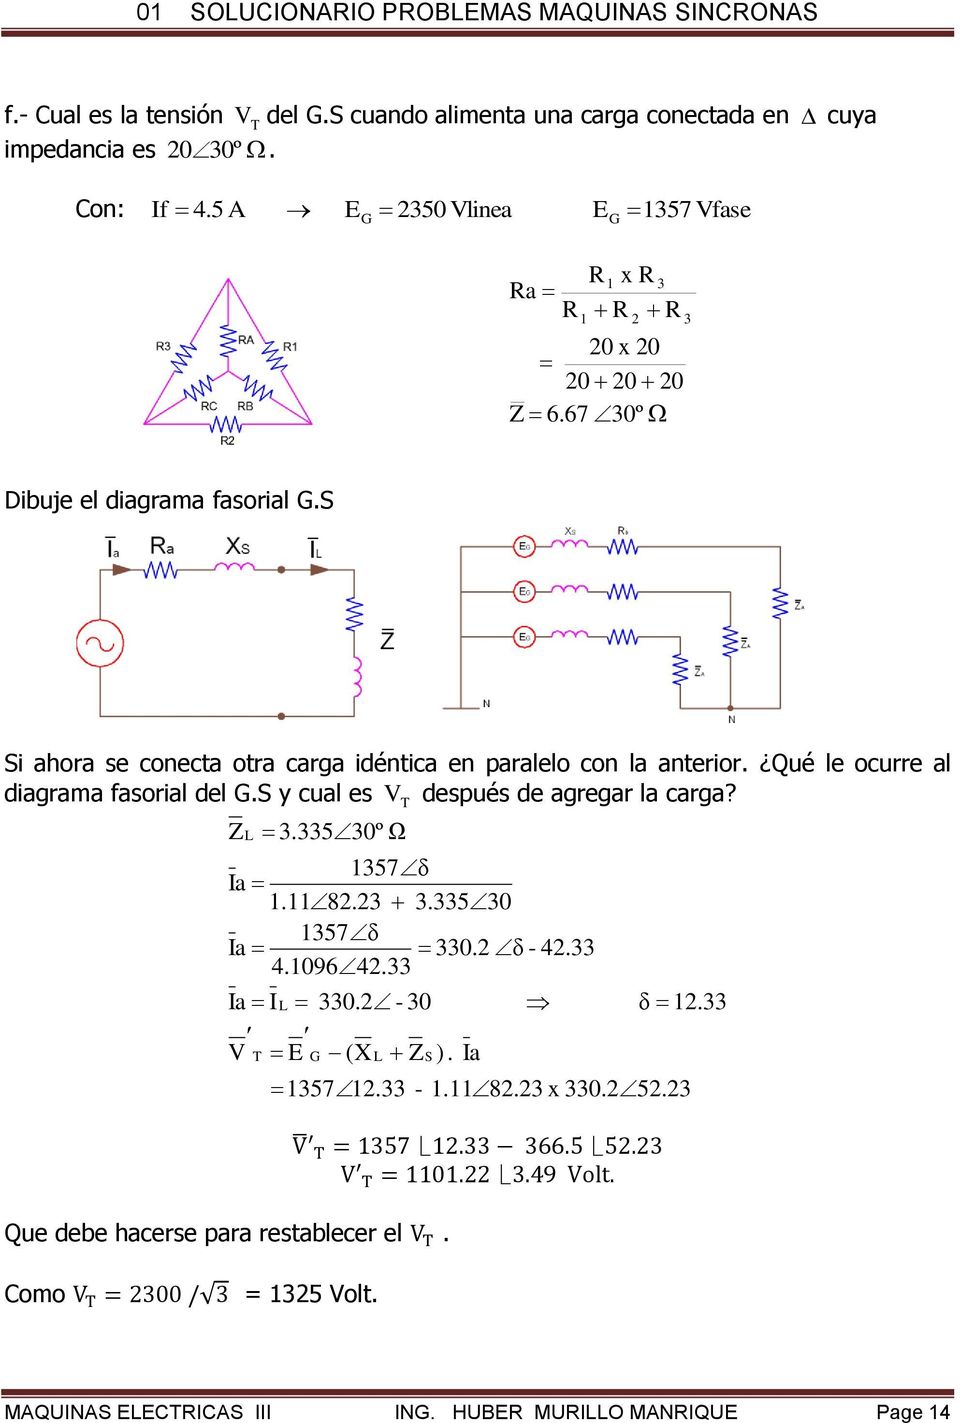 S Si ahora se conecta otra carga idéntica en paralelo con la anterior. Qué le ocurre al diagrama fasorial del G.S y cual es V después de agregar la carga?